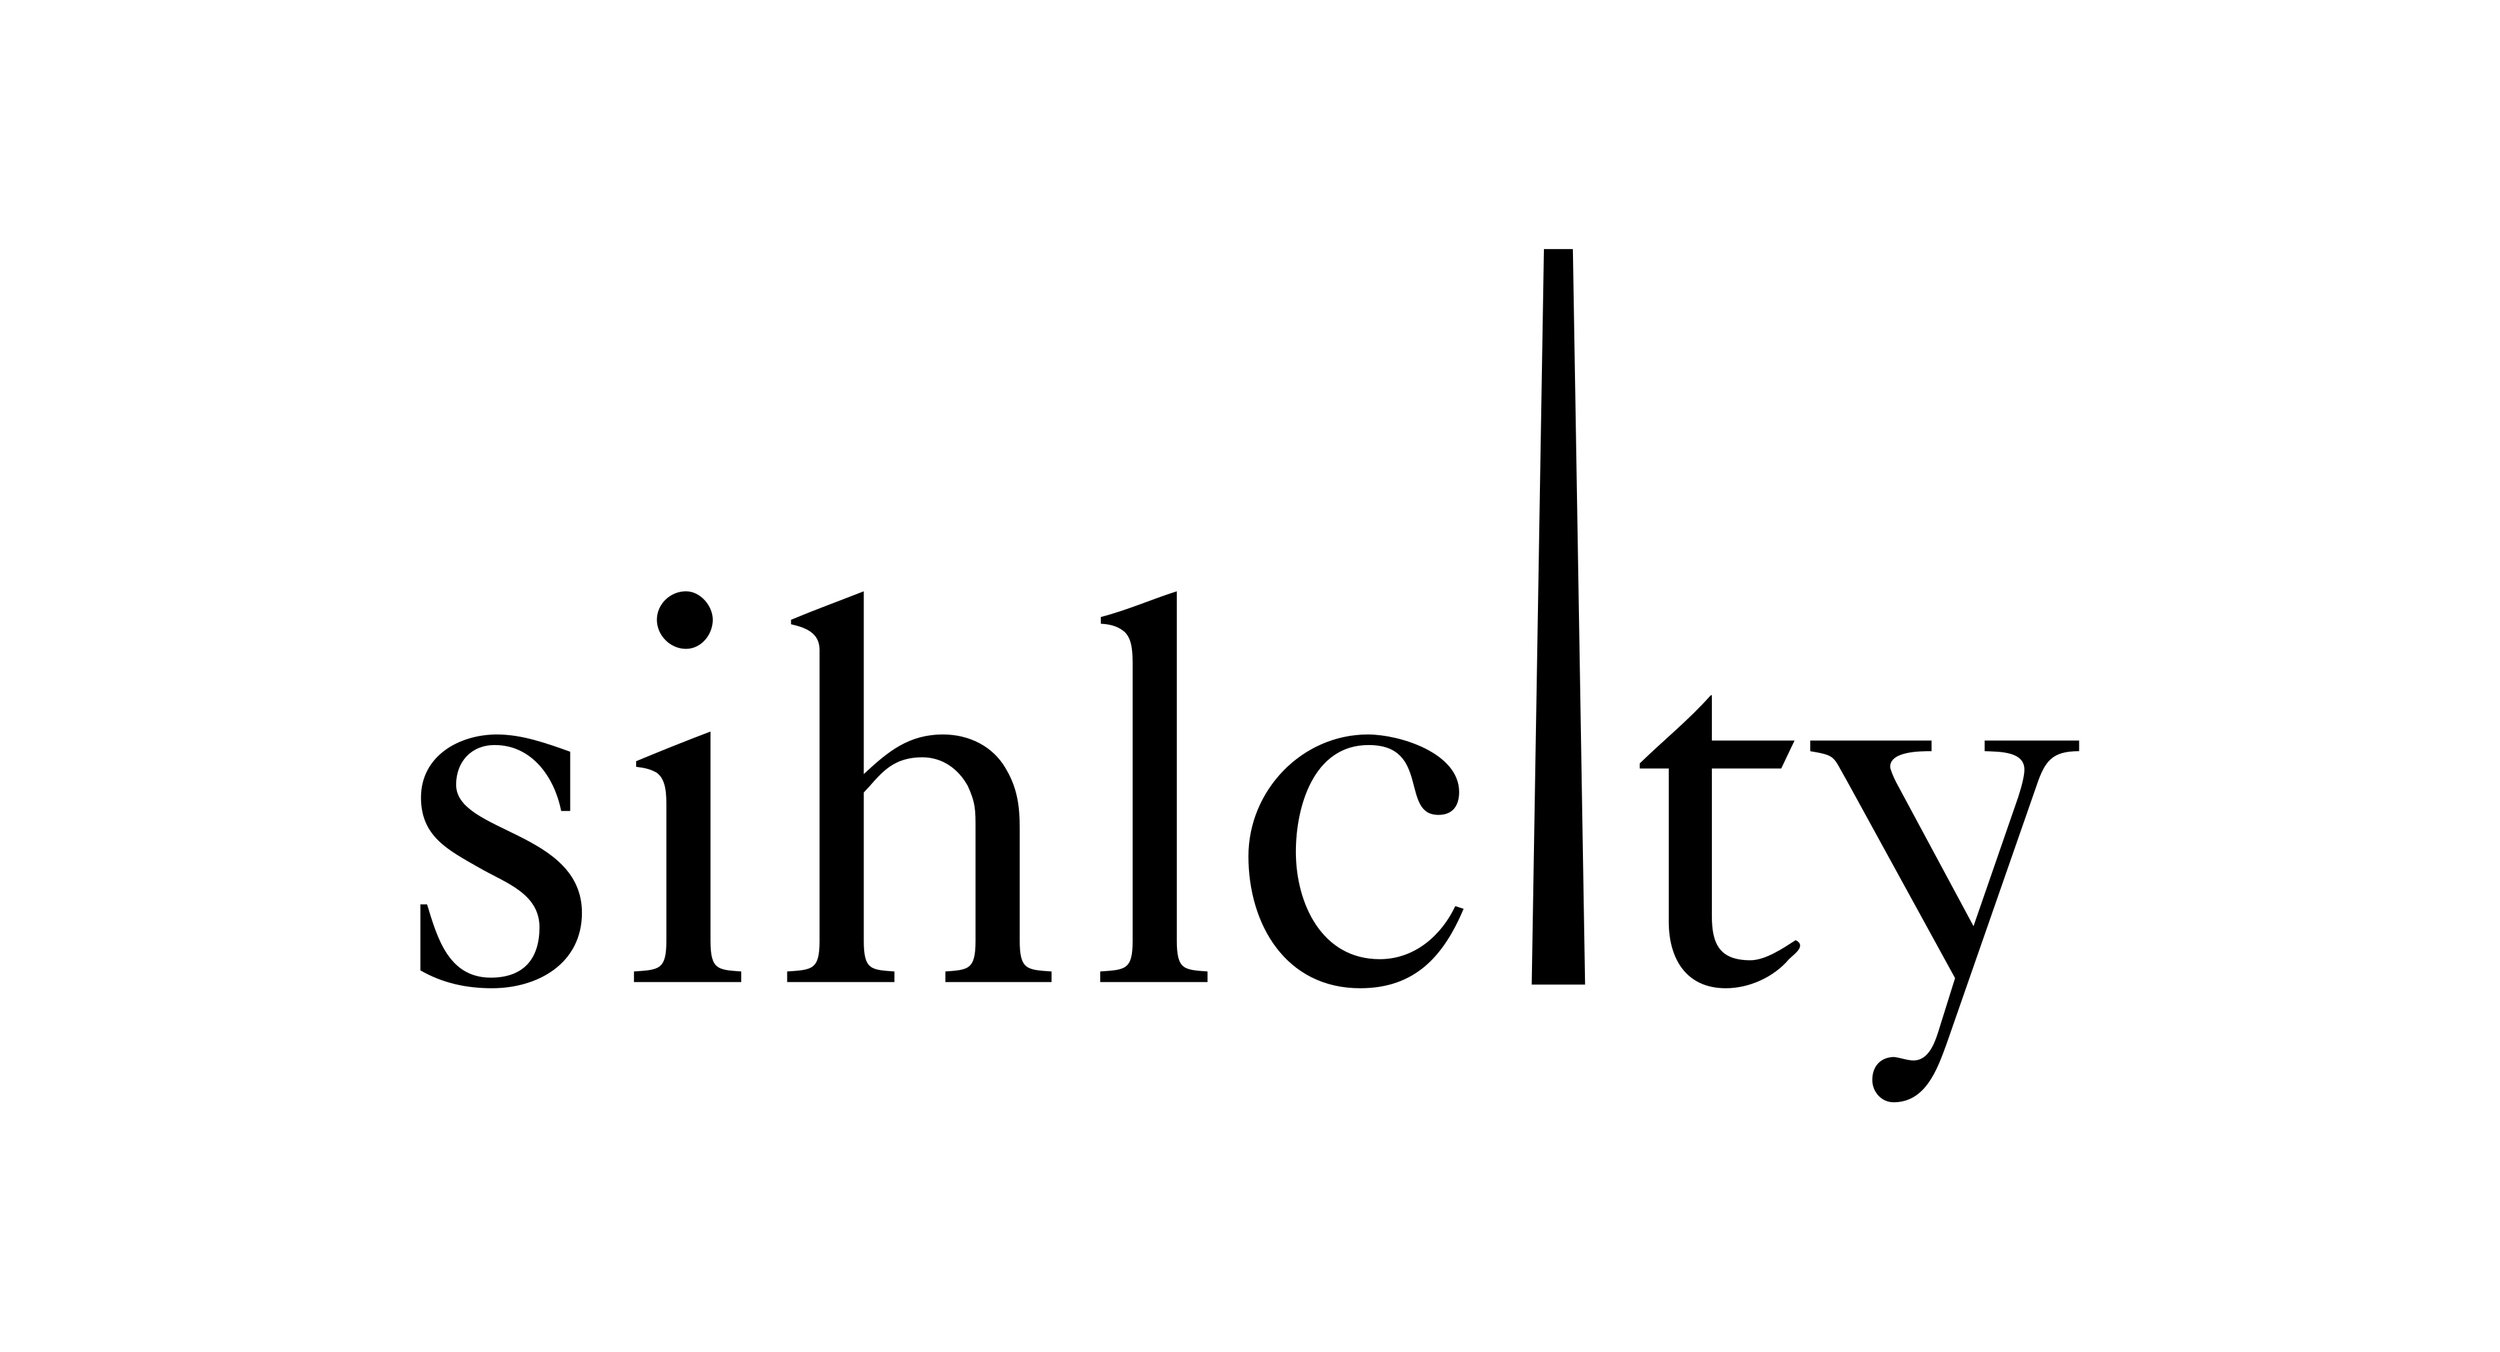 Shilcity